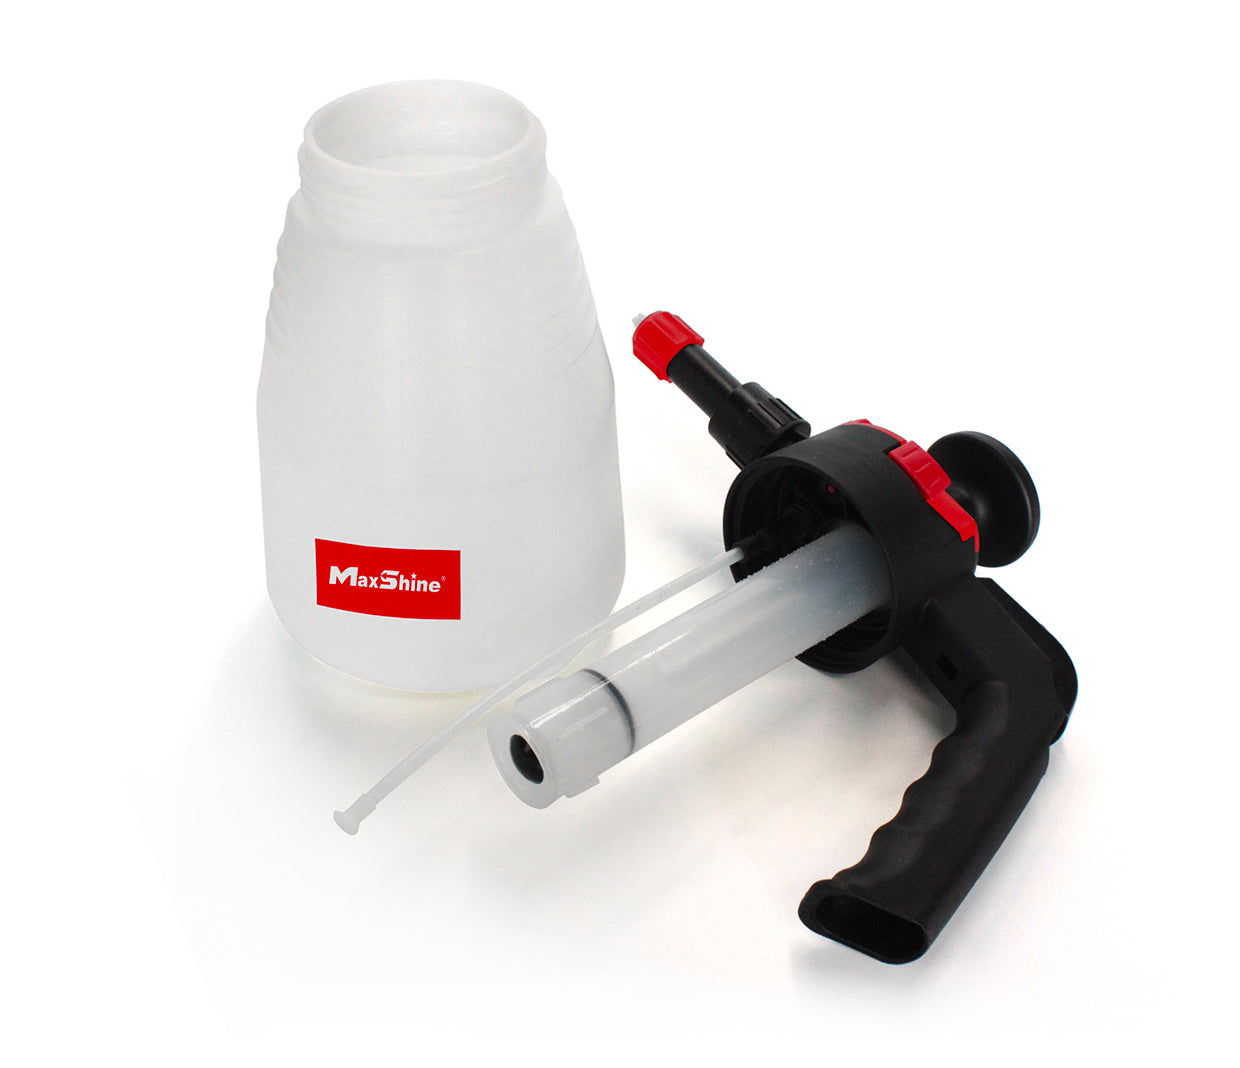 Maxshine 1.5L Foaming Pump Sprayer